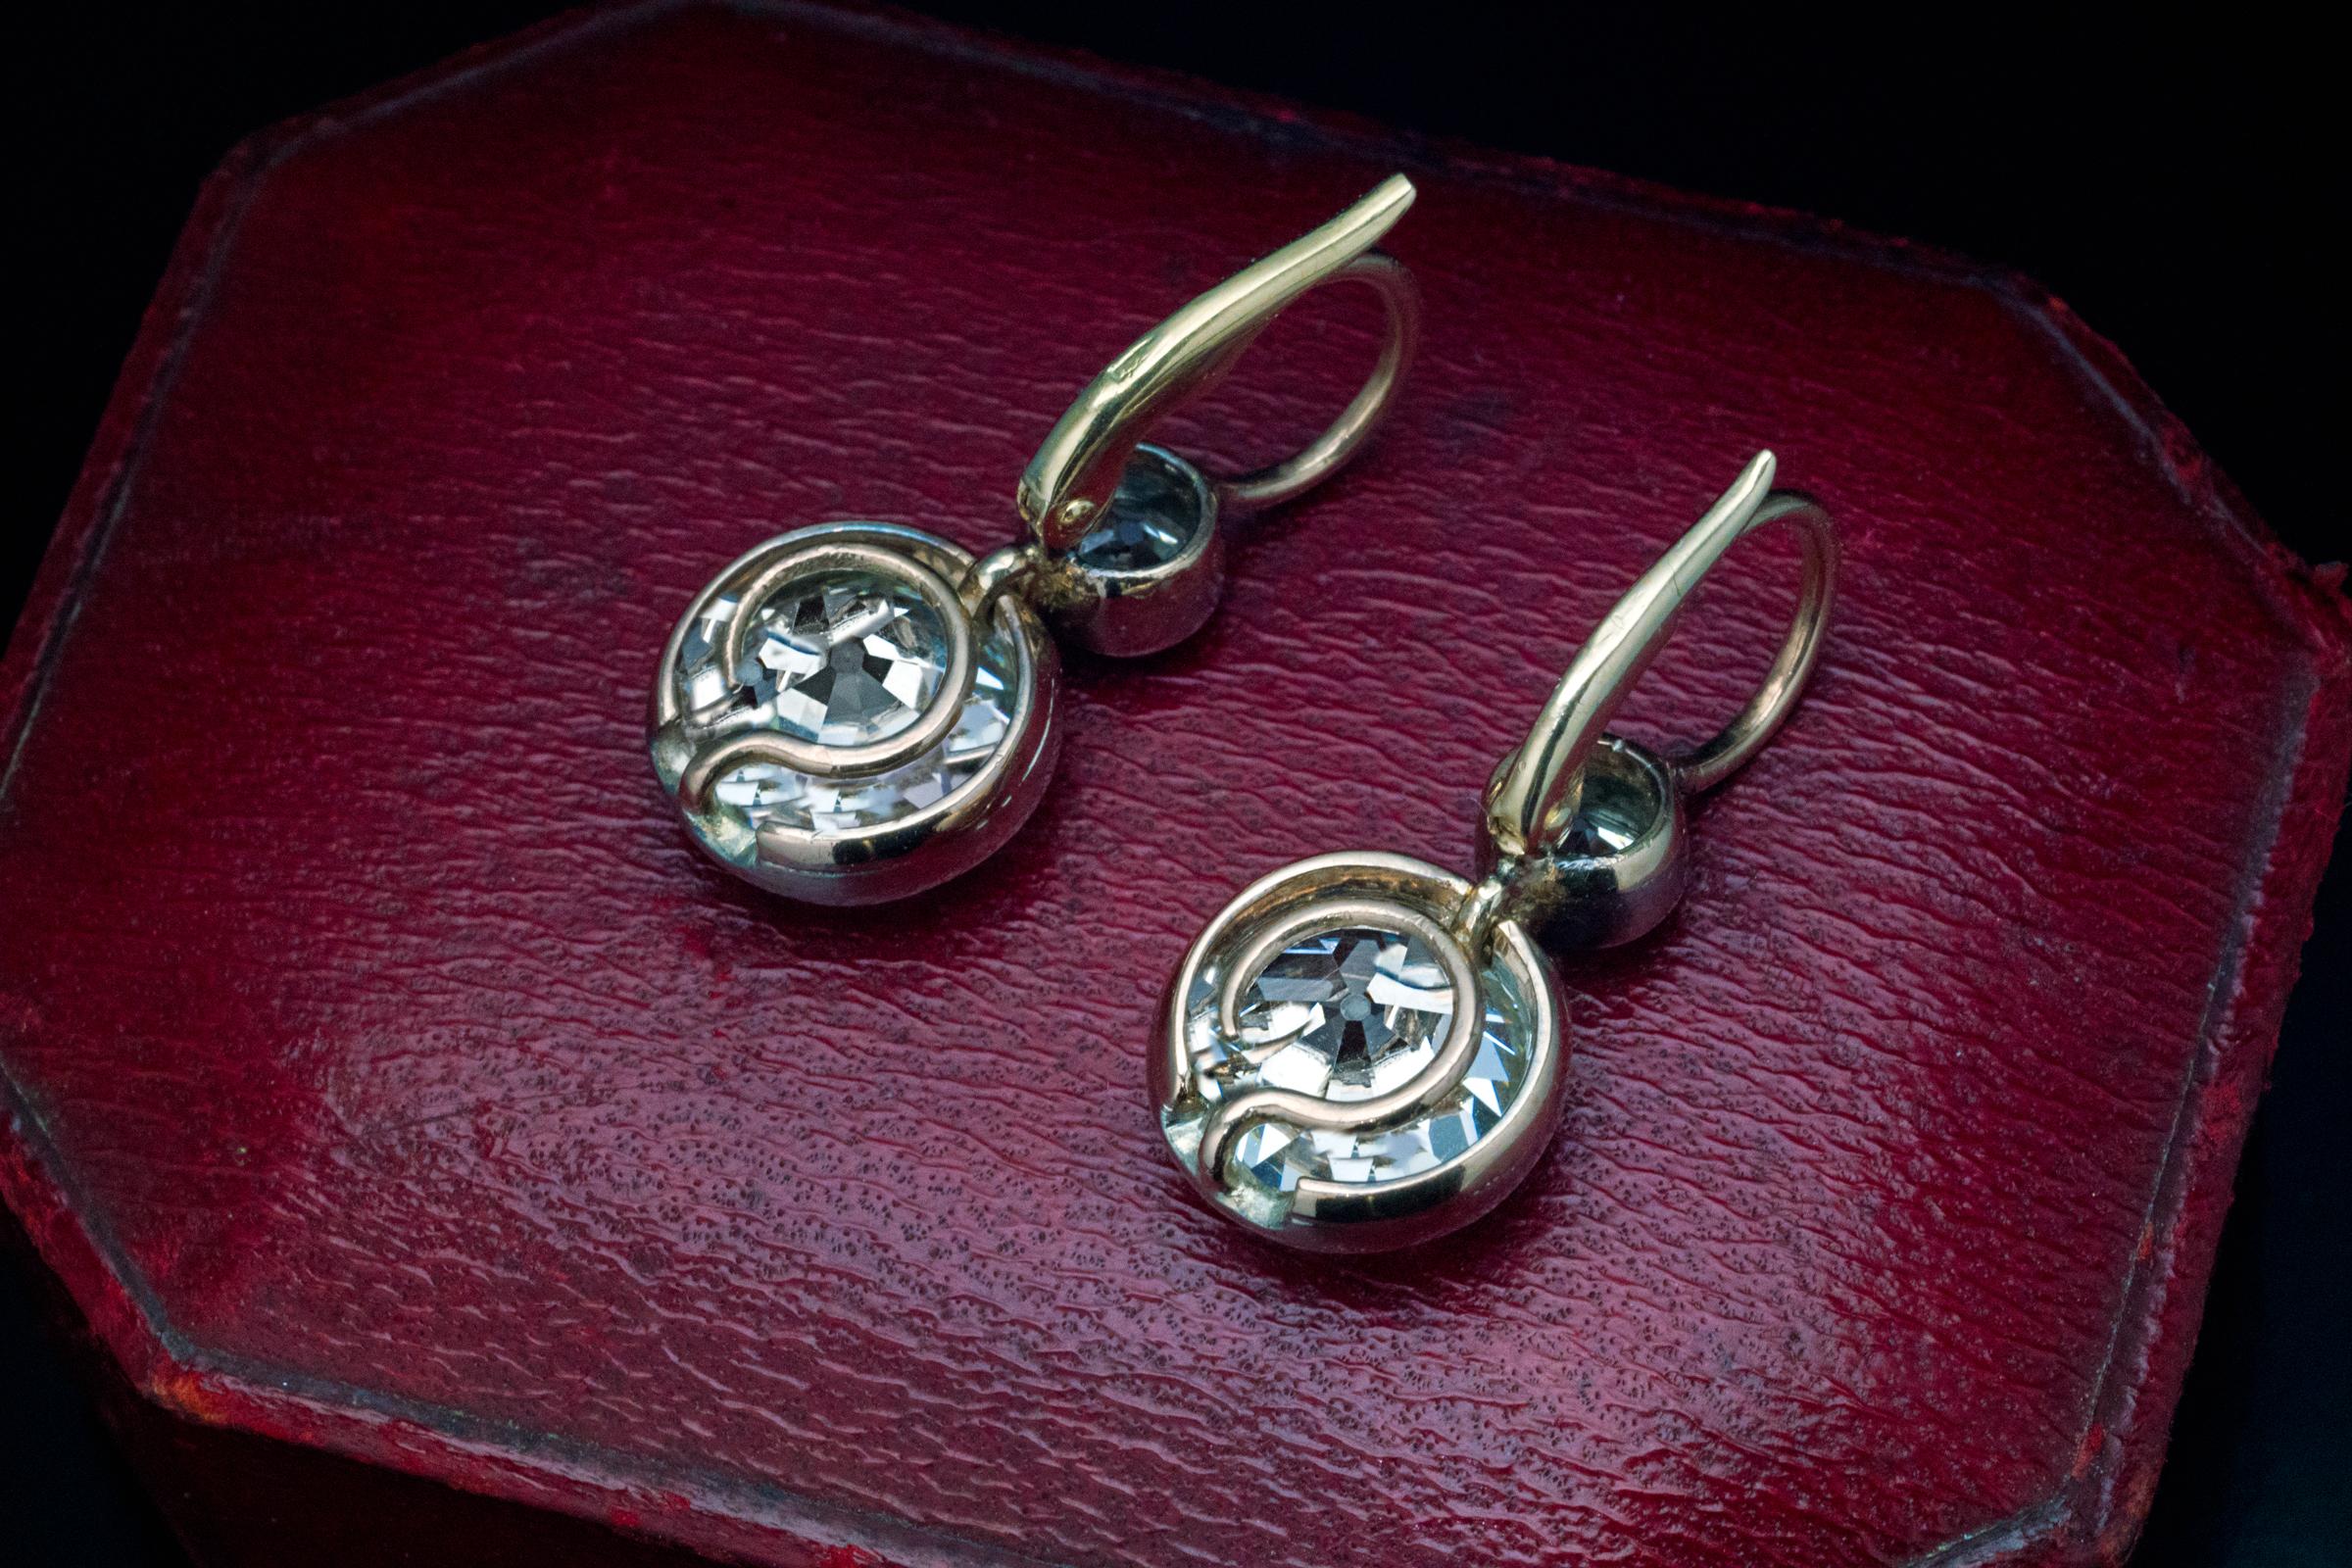 antique diamond drop earrings